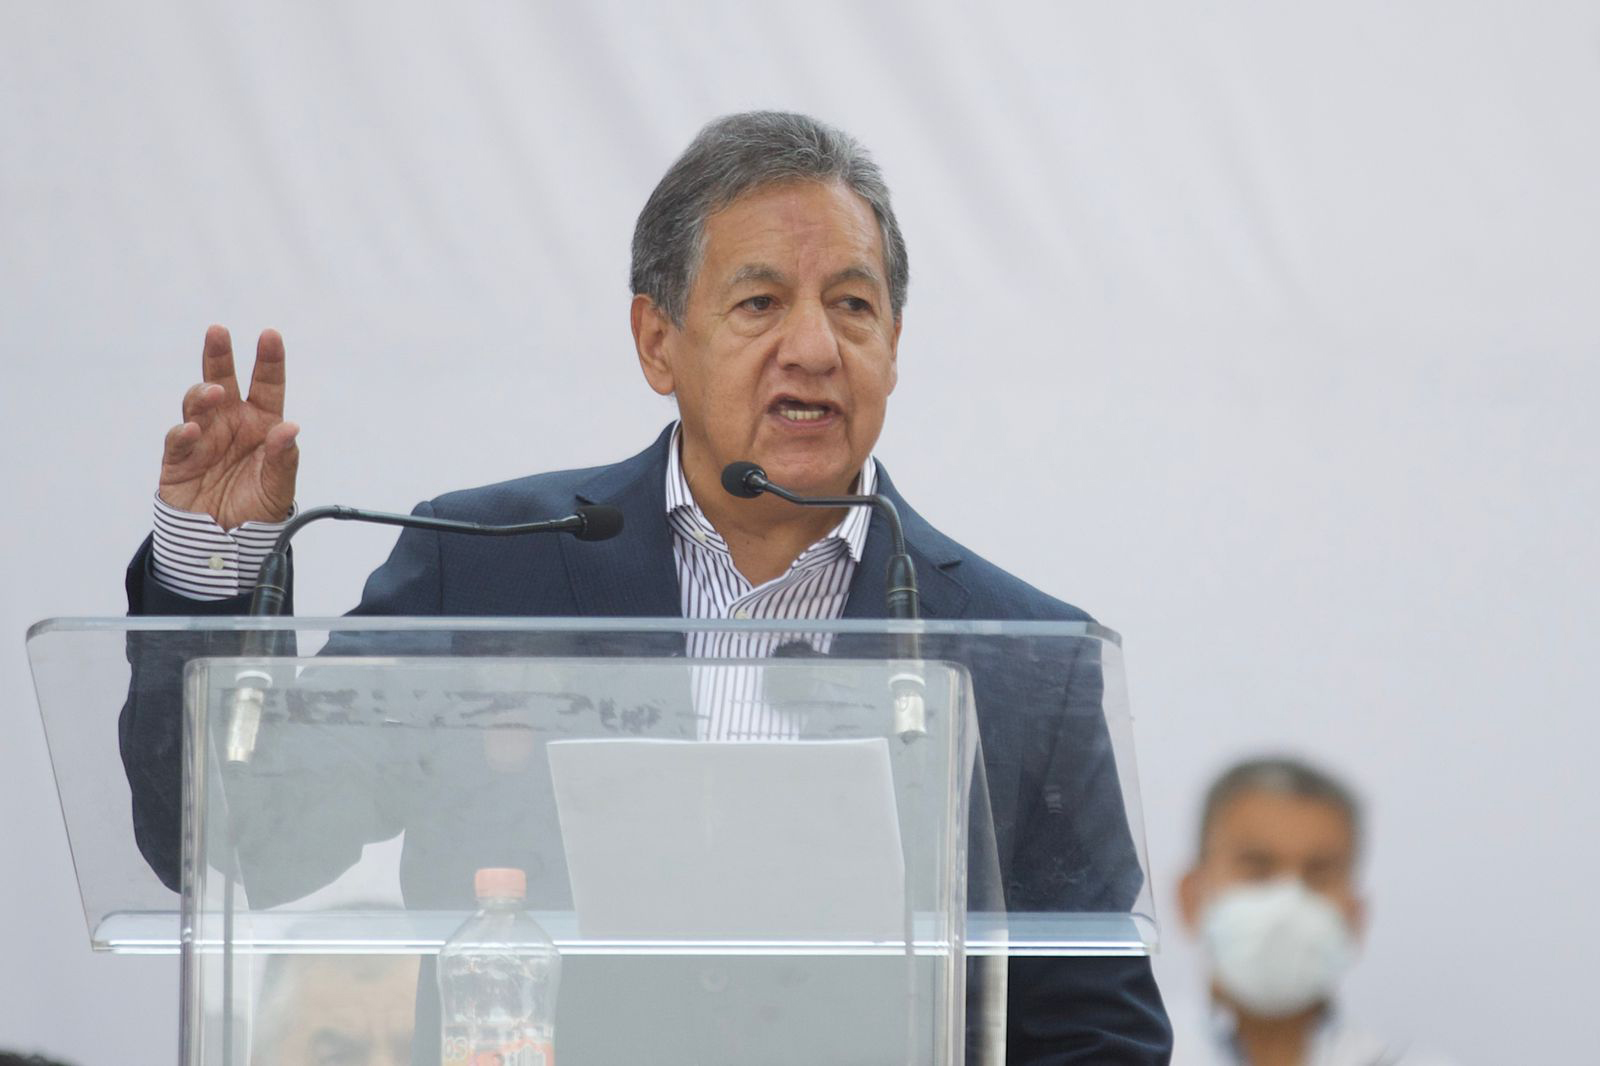 Higinio Martínez promete aceptar resultados de encuesta para candidato en el Estado de México